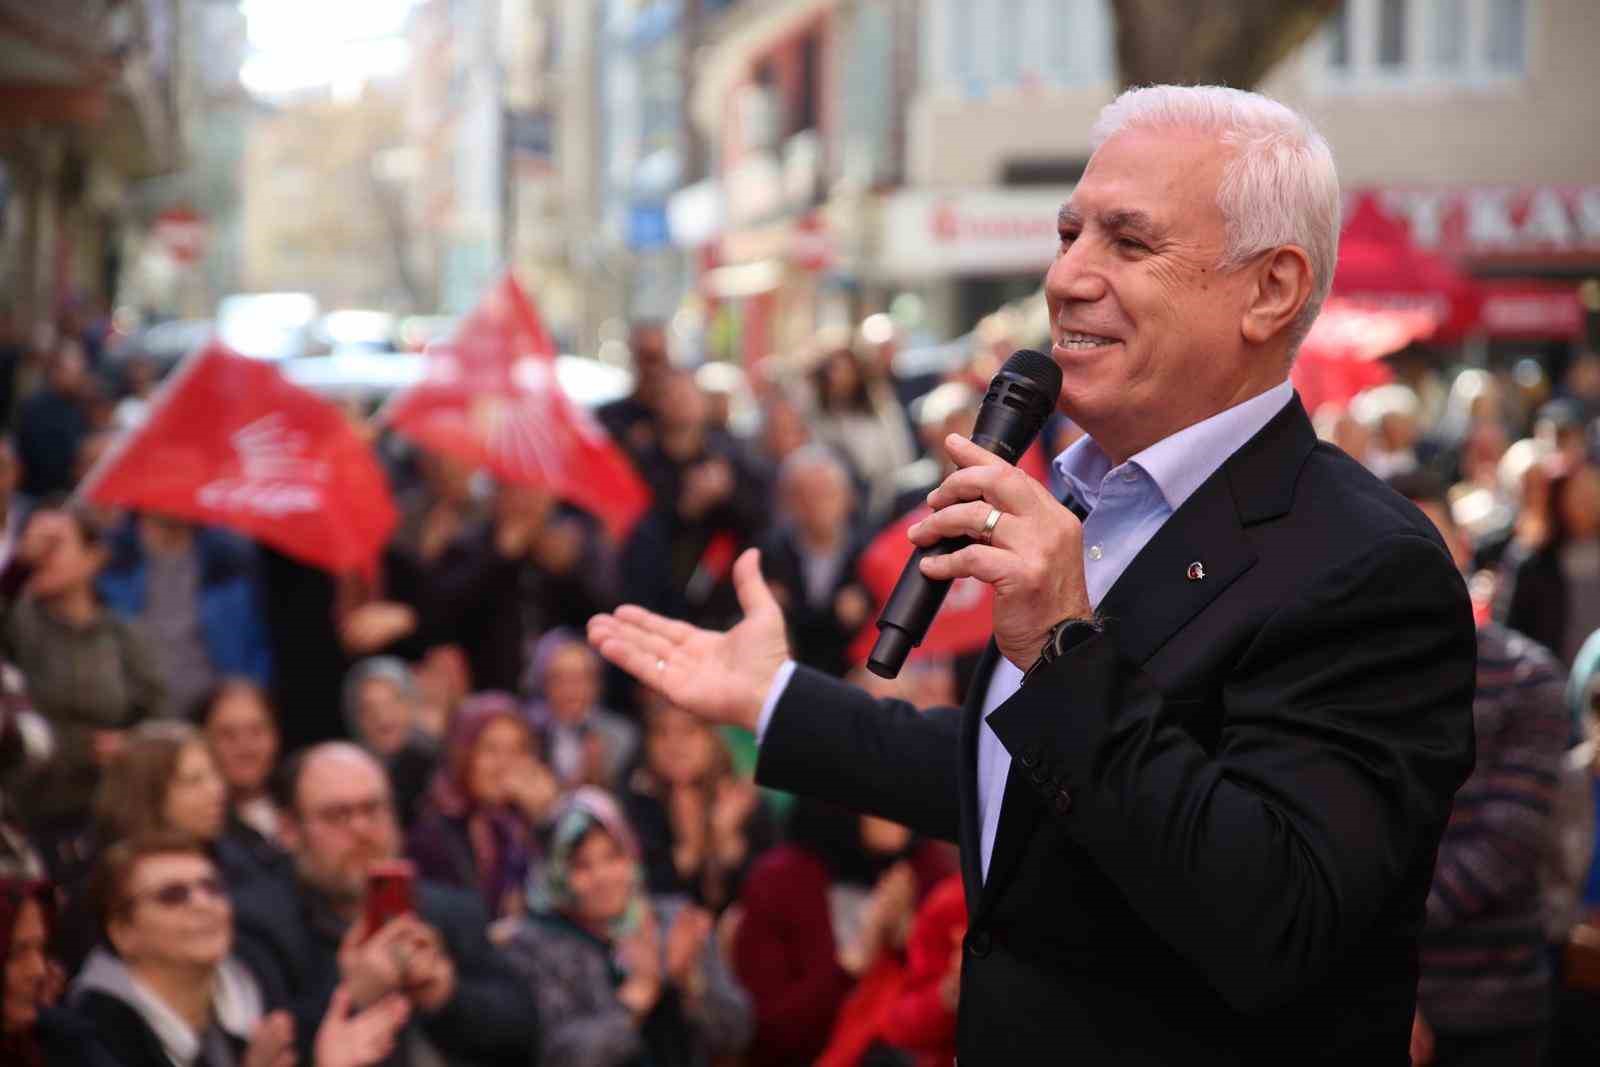 Bursa Büyükşehir Belediye Başkan Adayı Mustafa Bozbey: “Oy Namustur, Onu Koruyacağız”